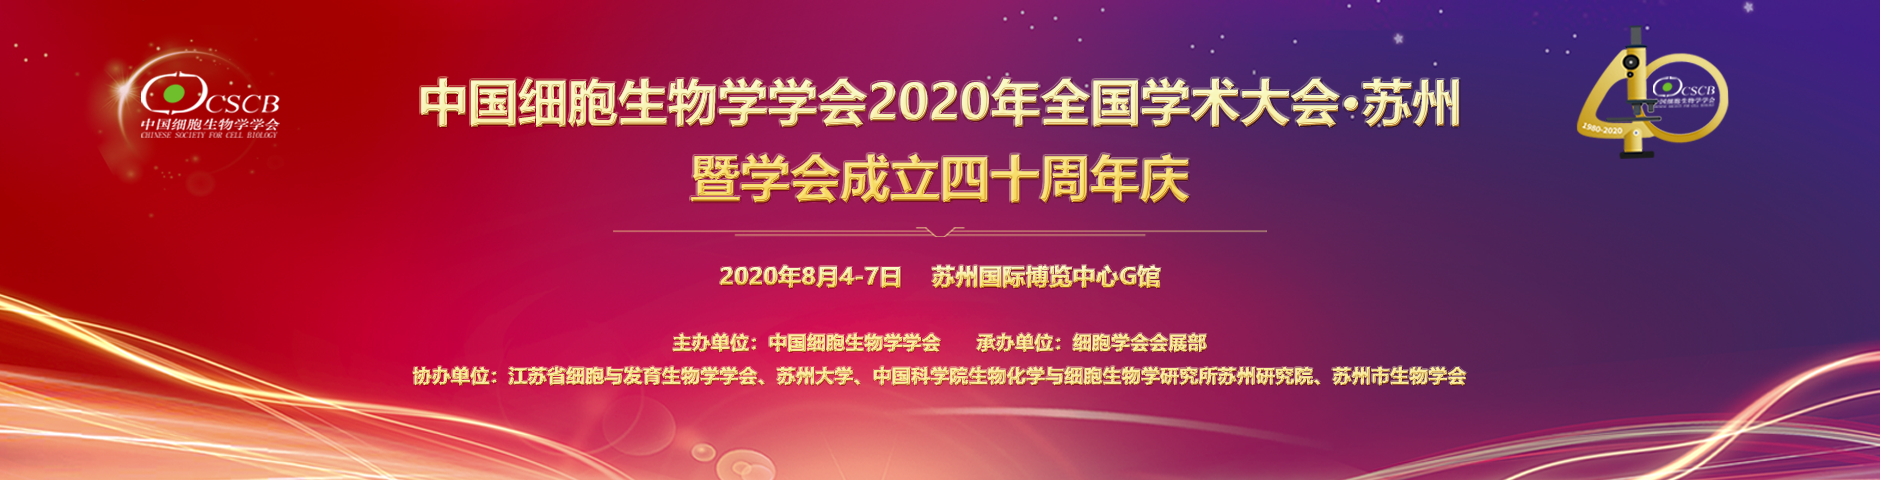 欣博盛携手GeneTex邀您参加中国细胞生物学学会2020年全国学术大会